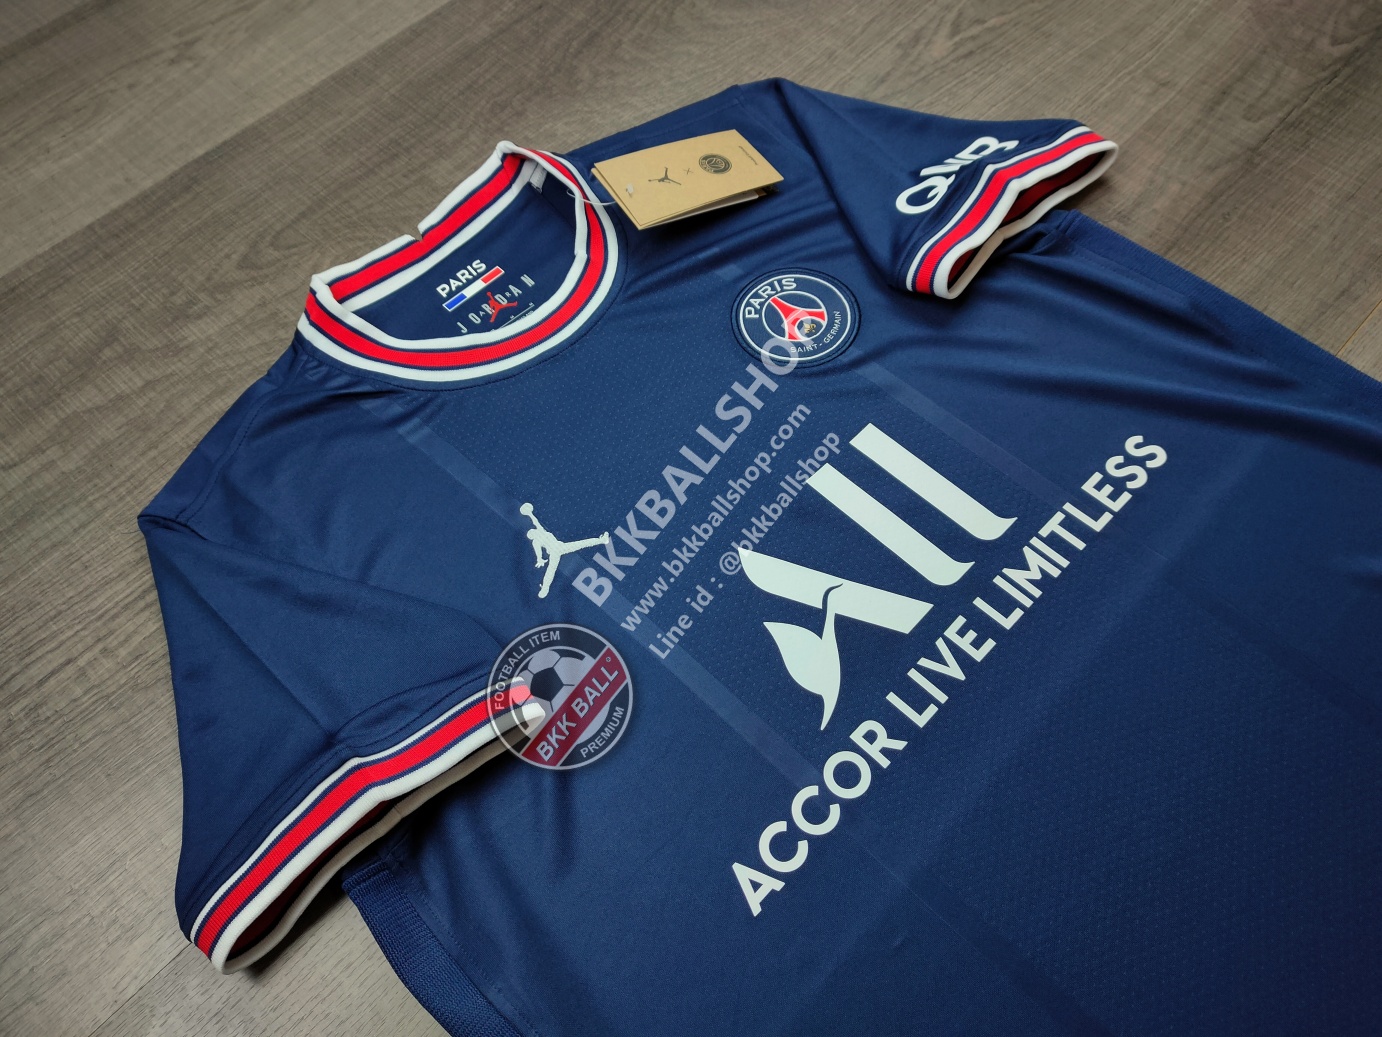 เสื้อฟุตบอล PSG Paris Saint Germain Home ปารีส แซงค์ ชาแมงค์ เหย้า 2021/22